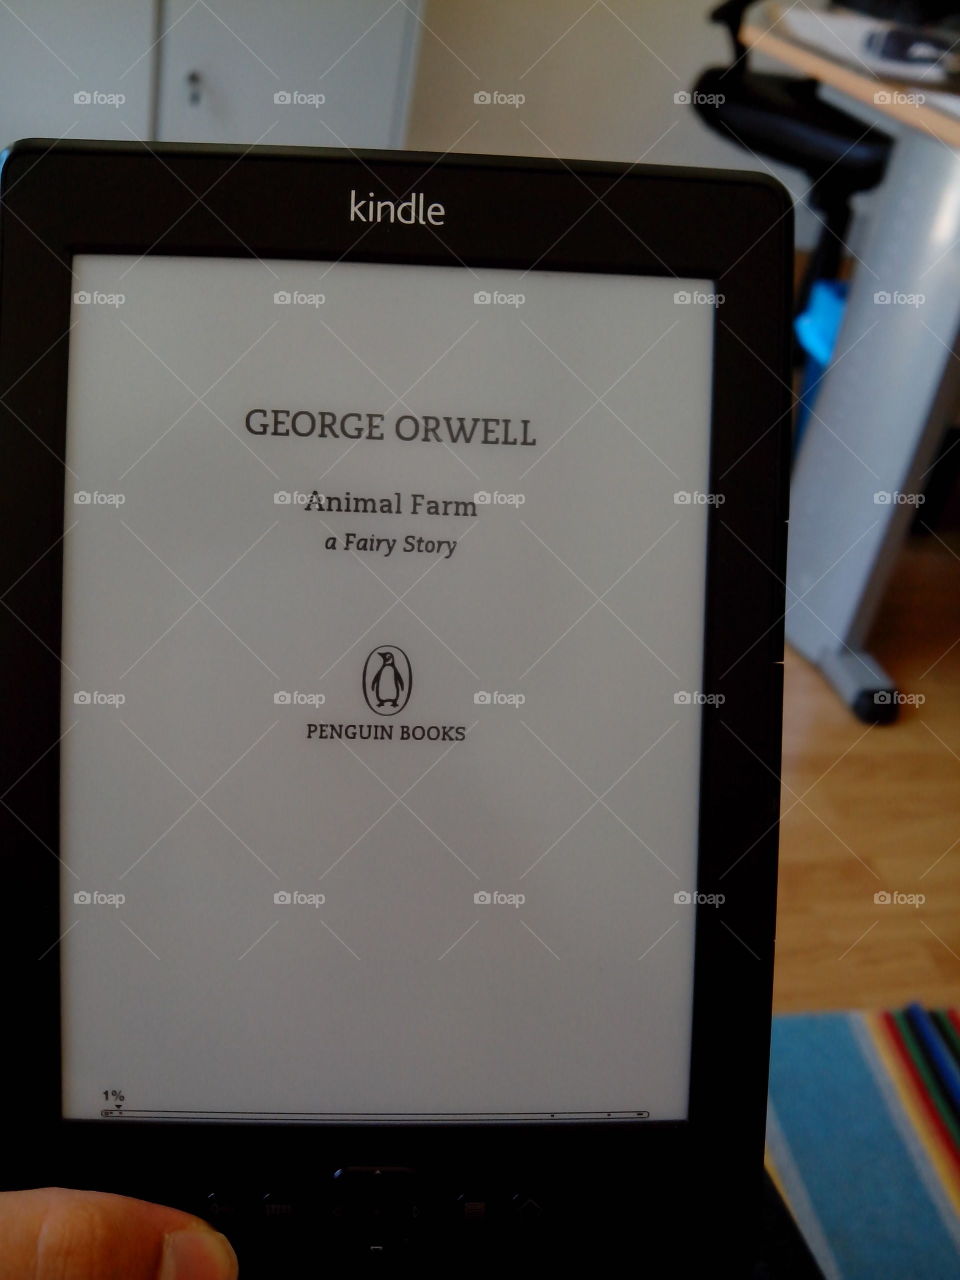 Reading George Orwell on kindle